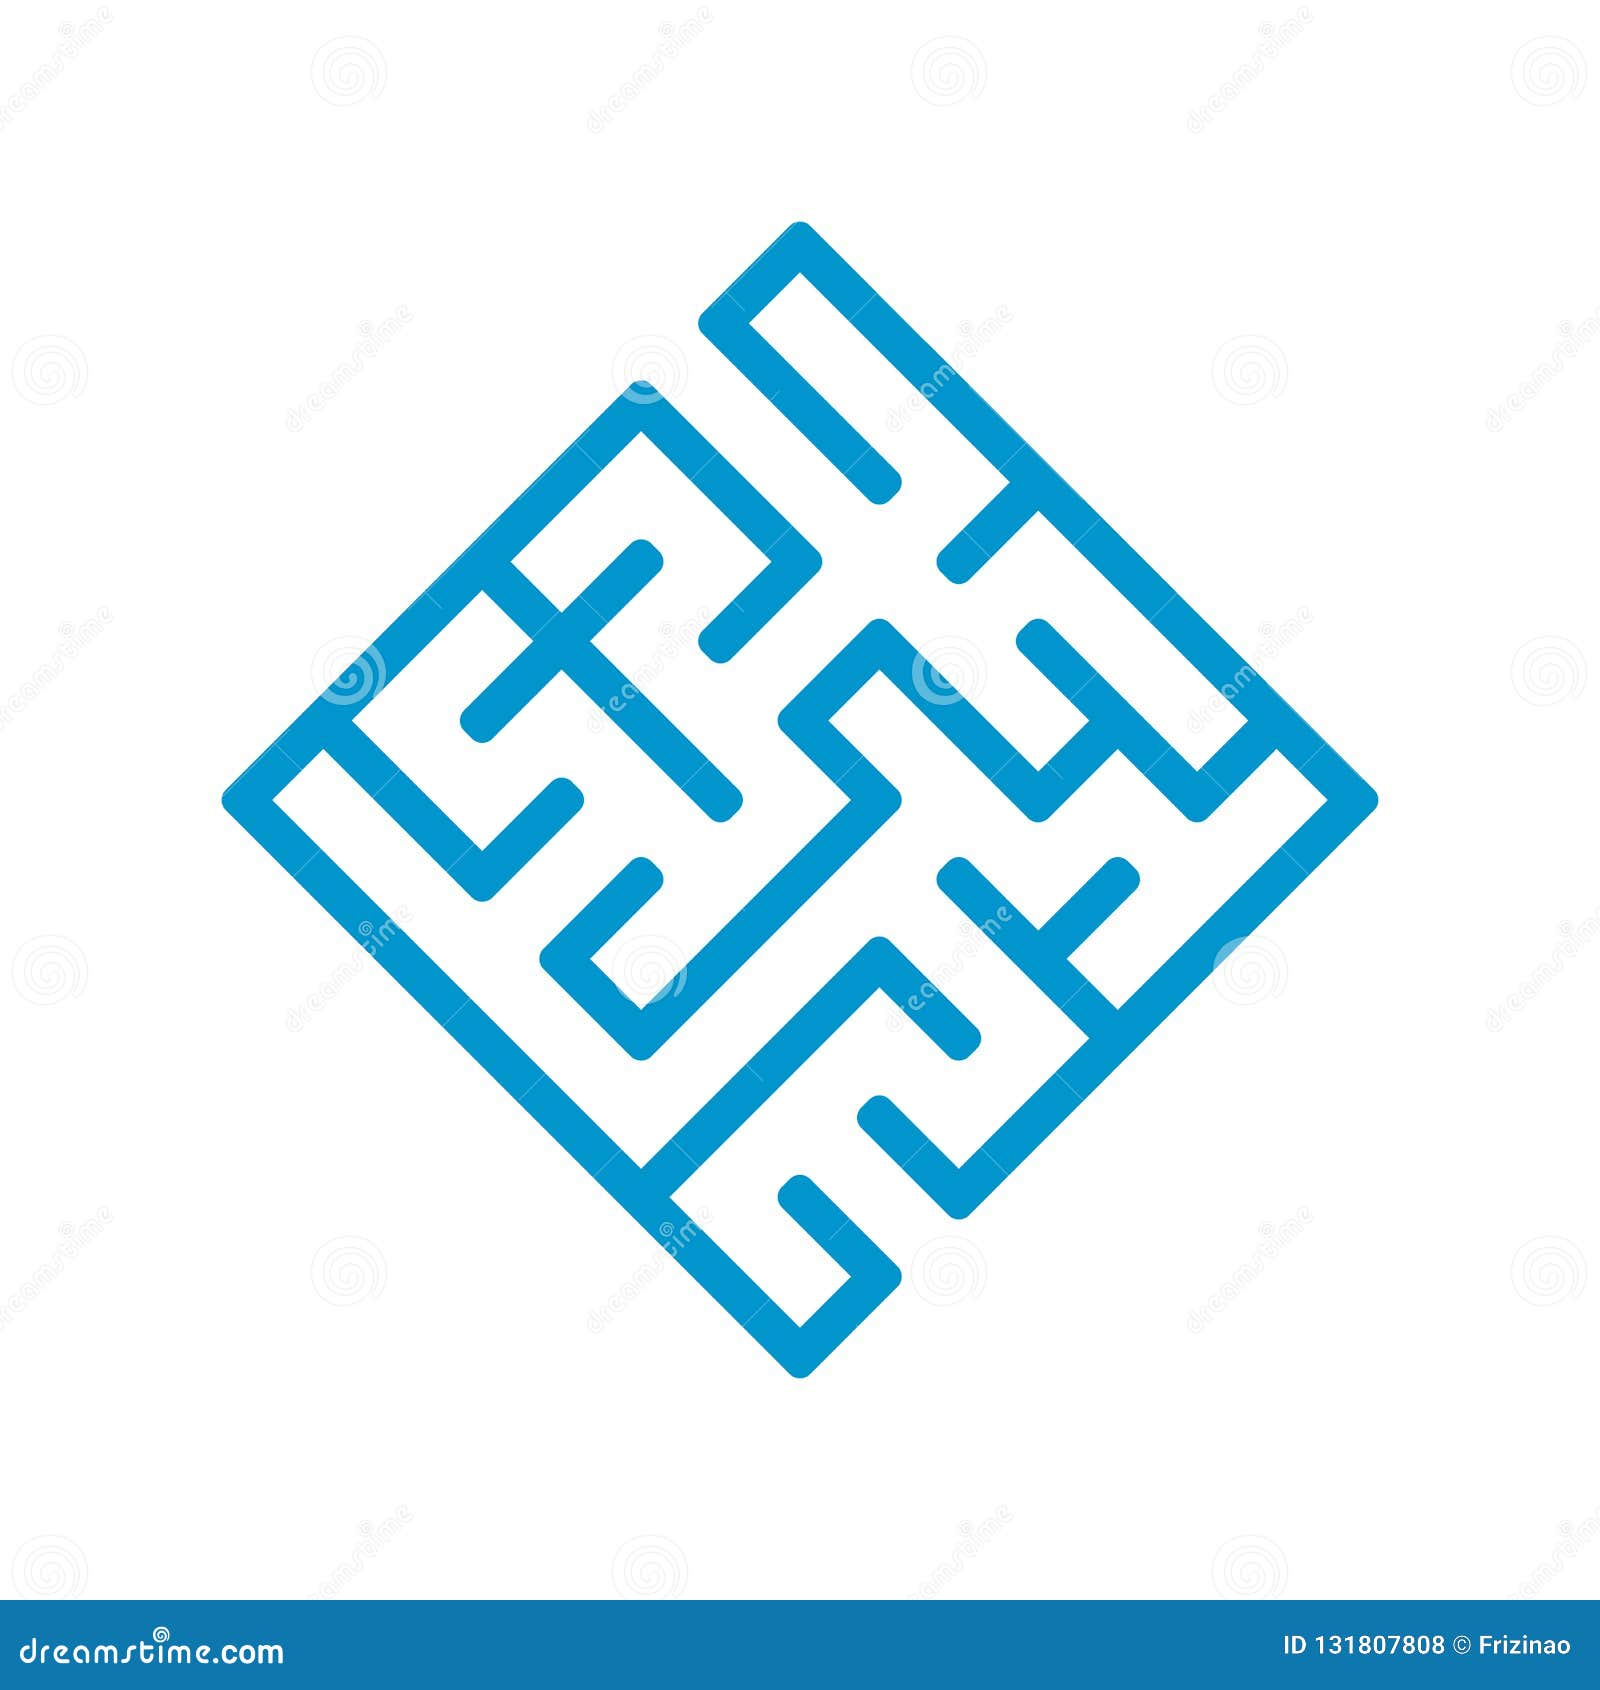 abstrait Labyrinthe puzzle labyrinthe avec entrée et sortie